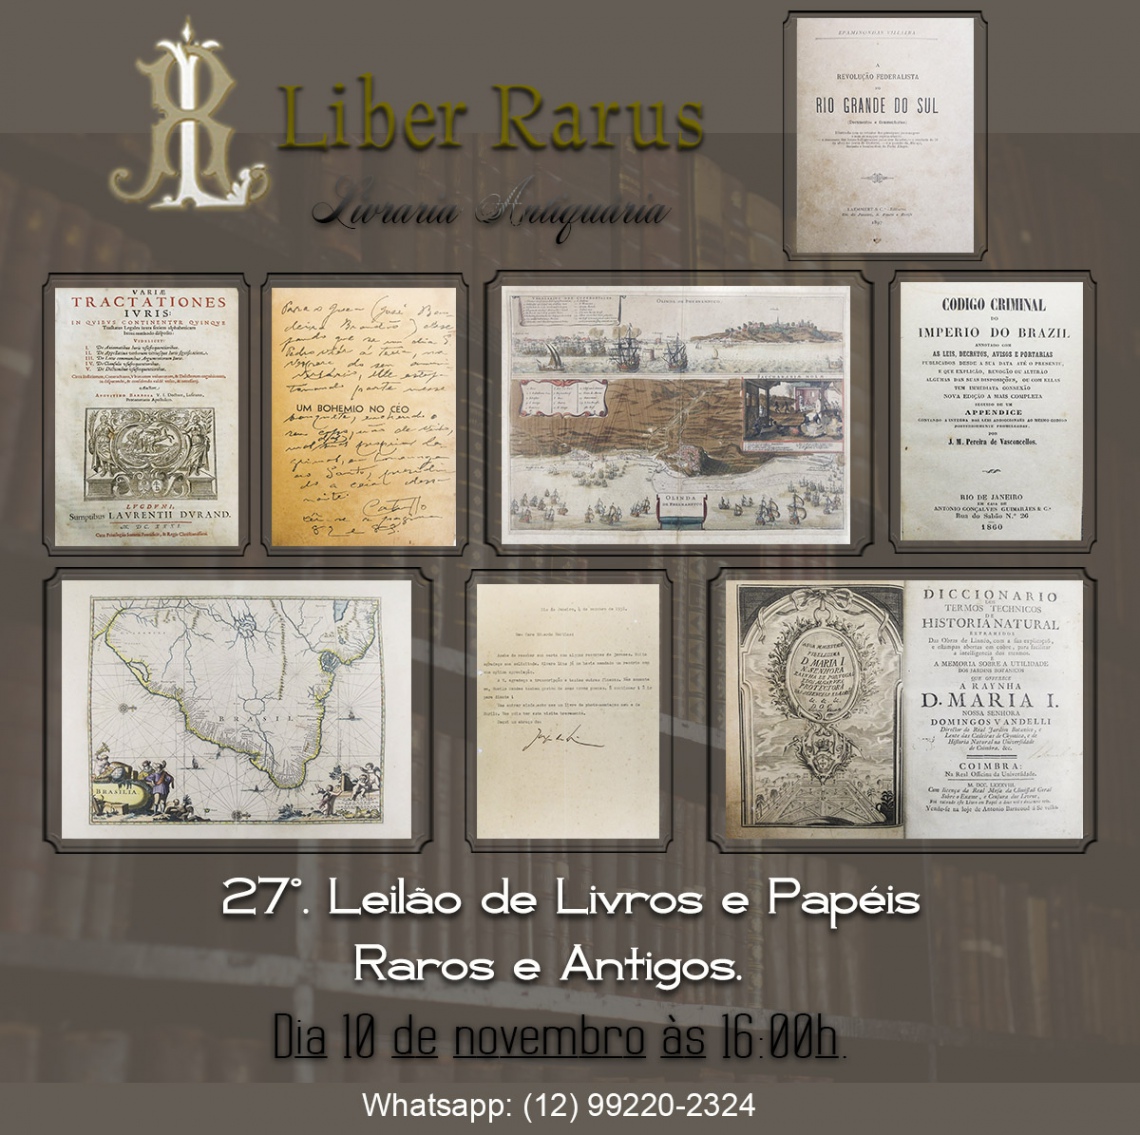 27º Leilão de Livros e Papéis Raros e Antigos - Liber Rarus - 10/11/2021 - 16h00